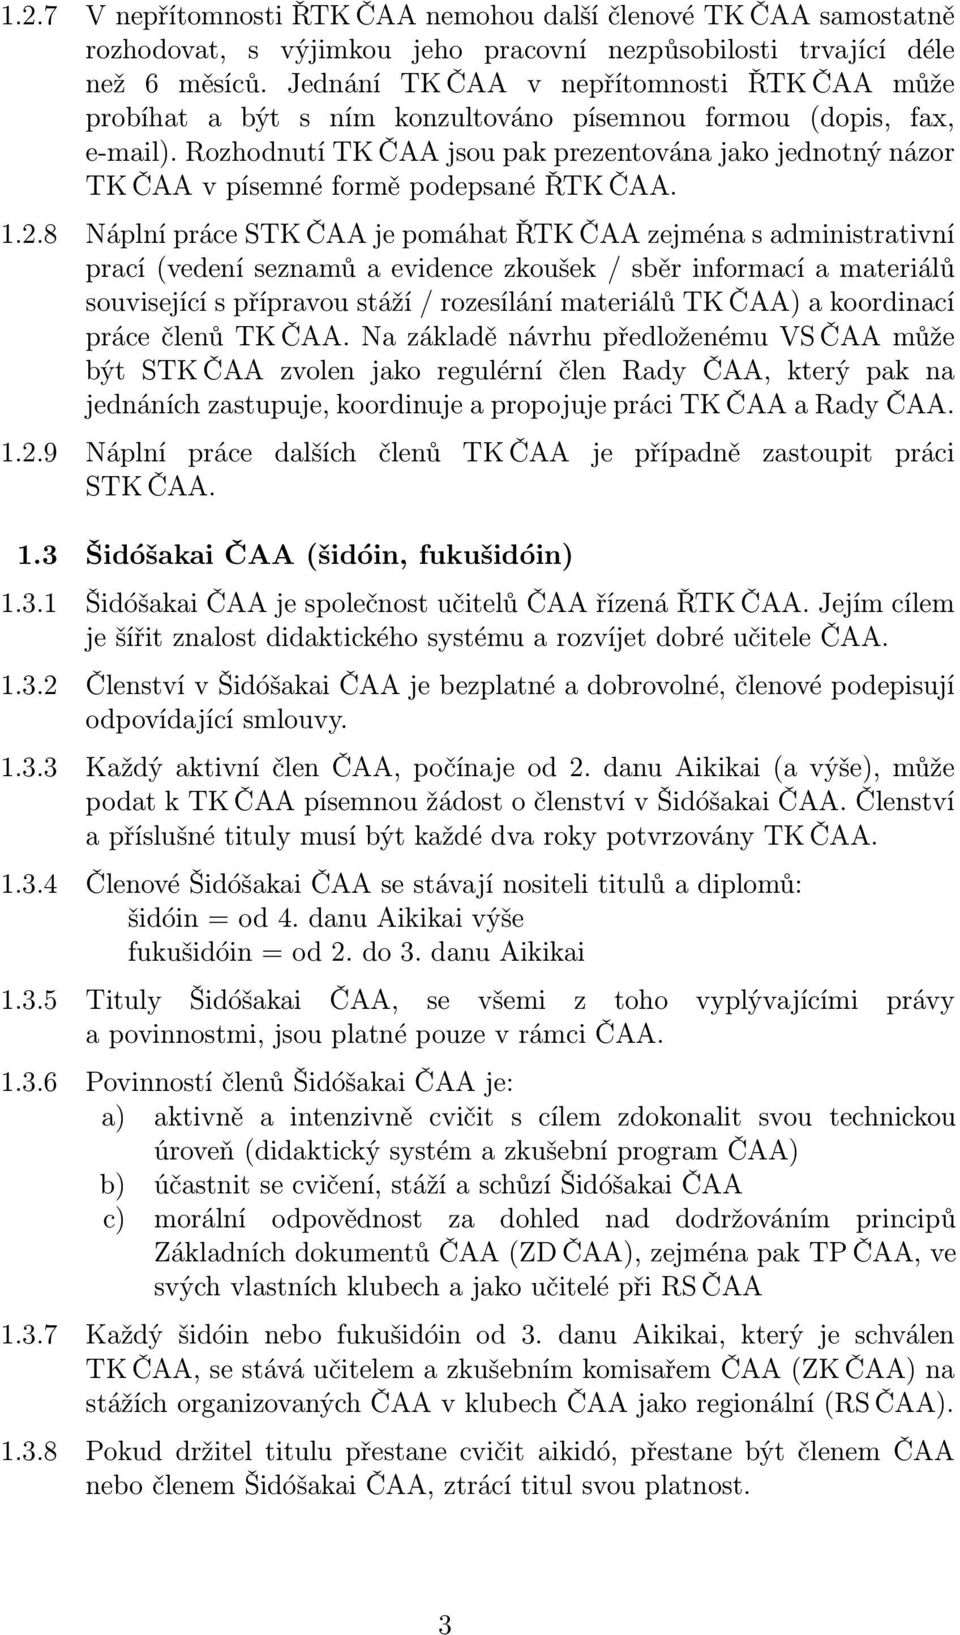 Rozhodnutí TK ČAA jsou pak prezentována jako jednotný názor TK ČAA v písemné formě podepsané ŘTK ČAA. 1.2.